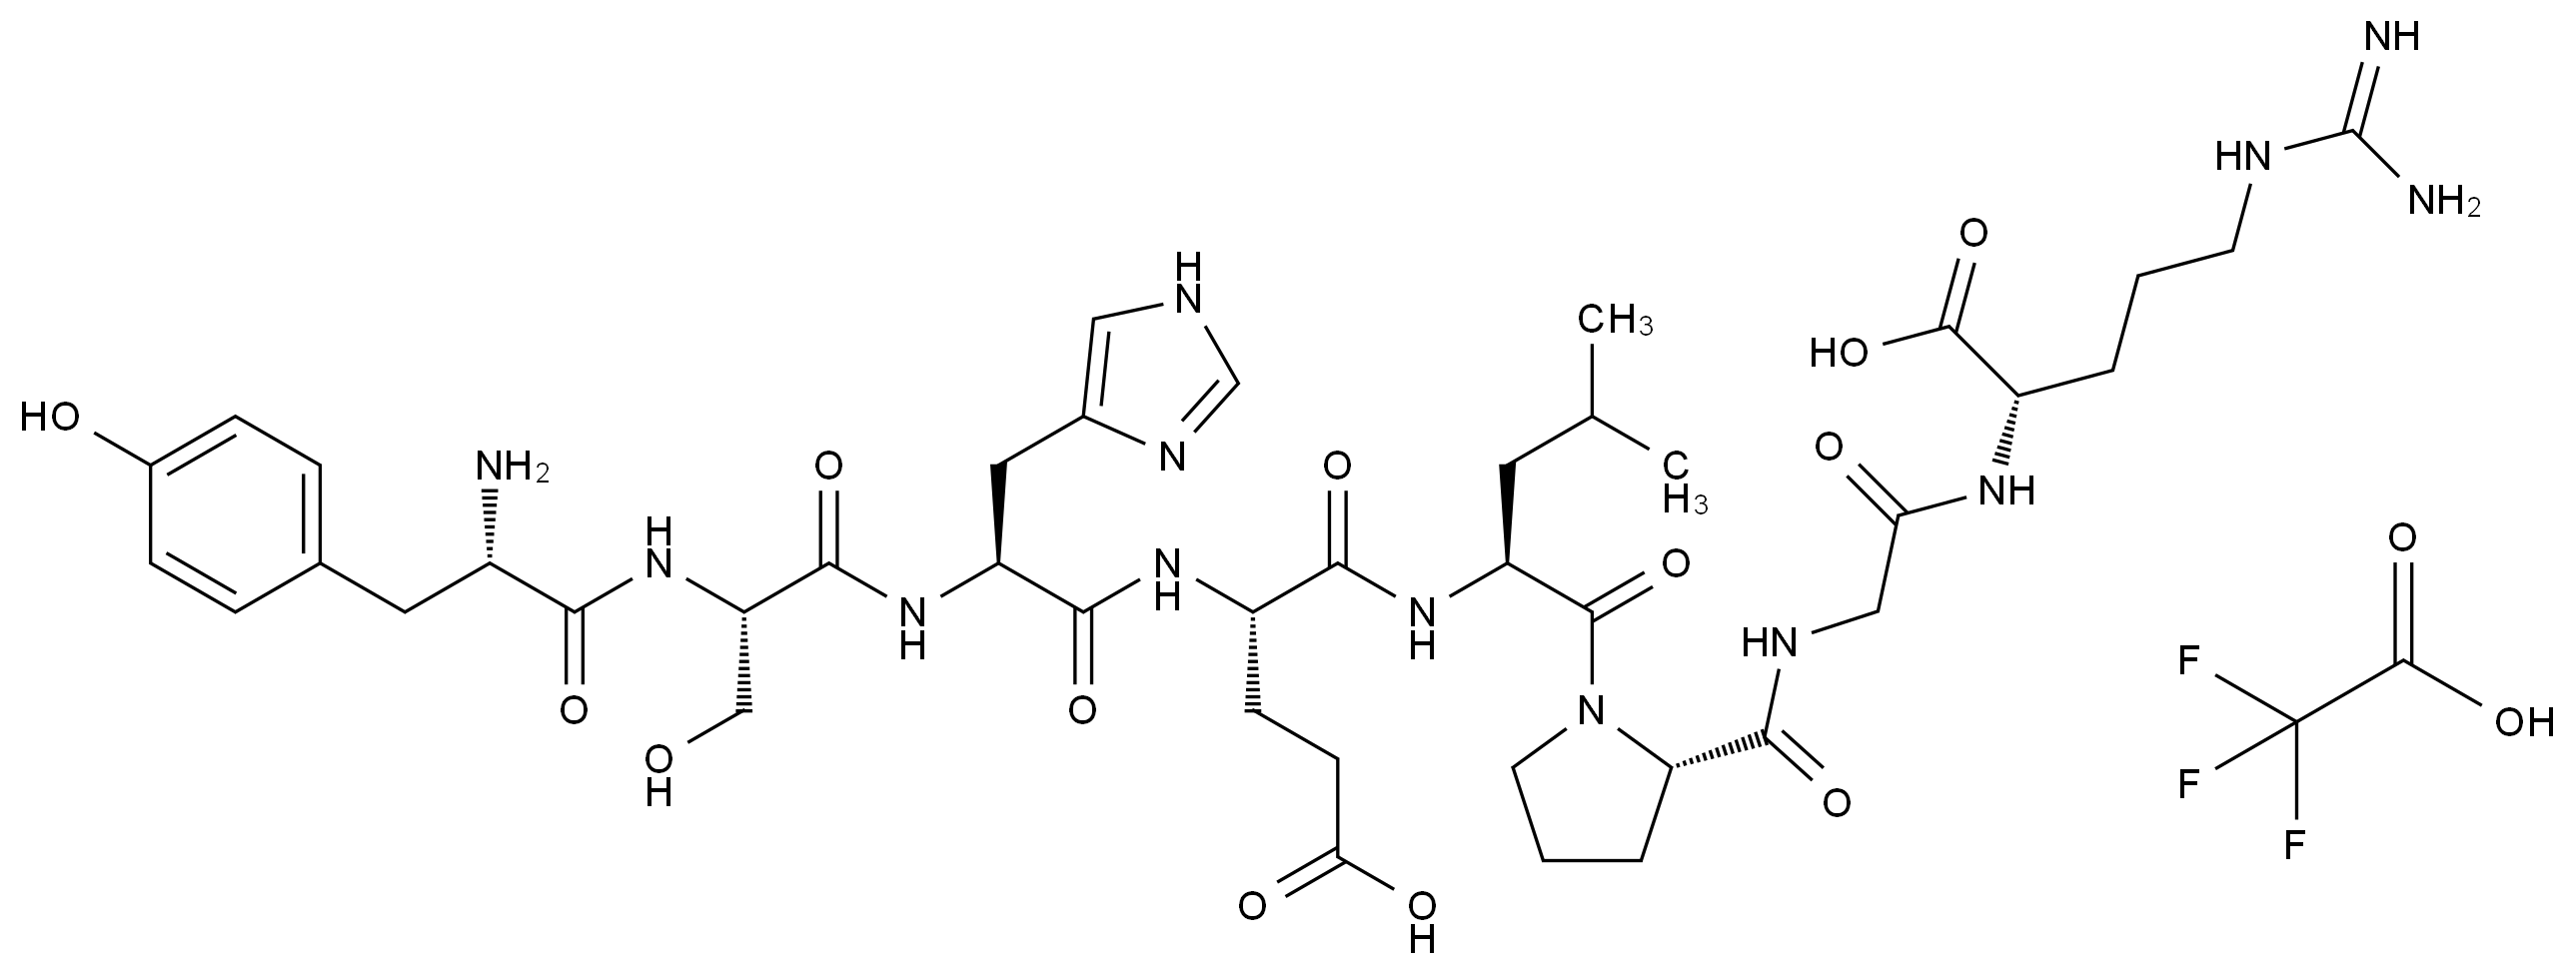 L-酪氨酸-L-丝氨酸-L-组氨酸-L-谷氨酸-L-亮氨酸-L-脯氨酸-甘氨酸-L-精氨酸(TFA盐)